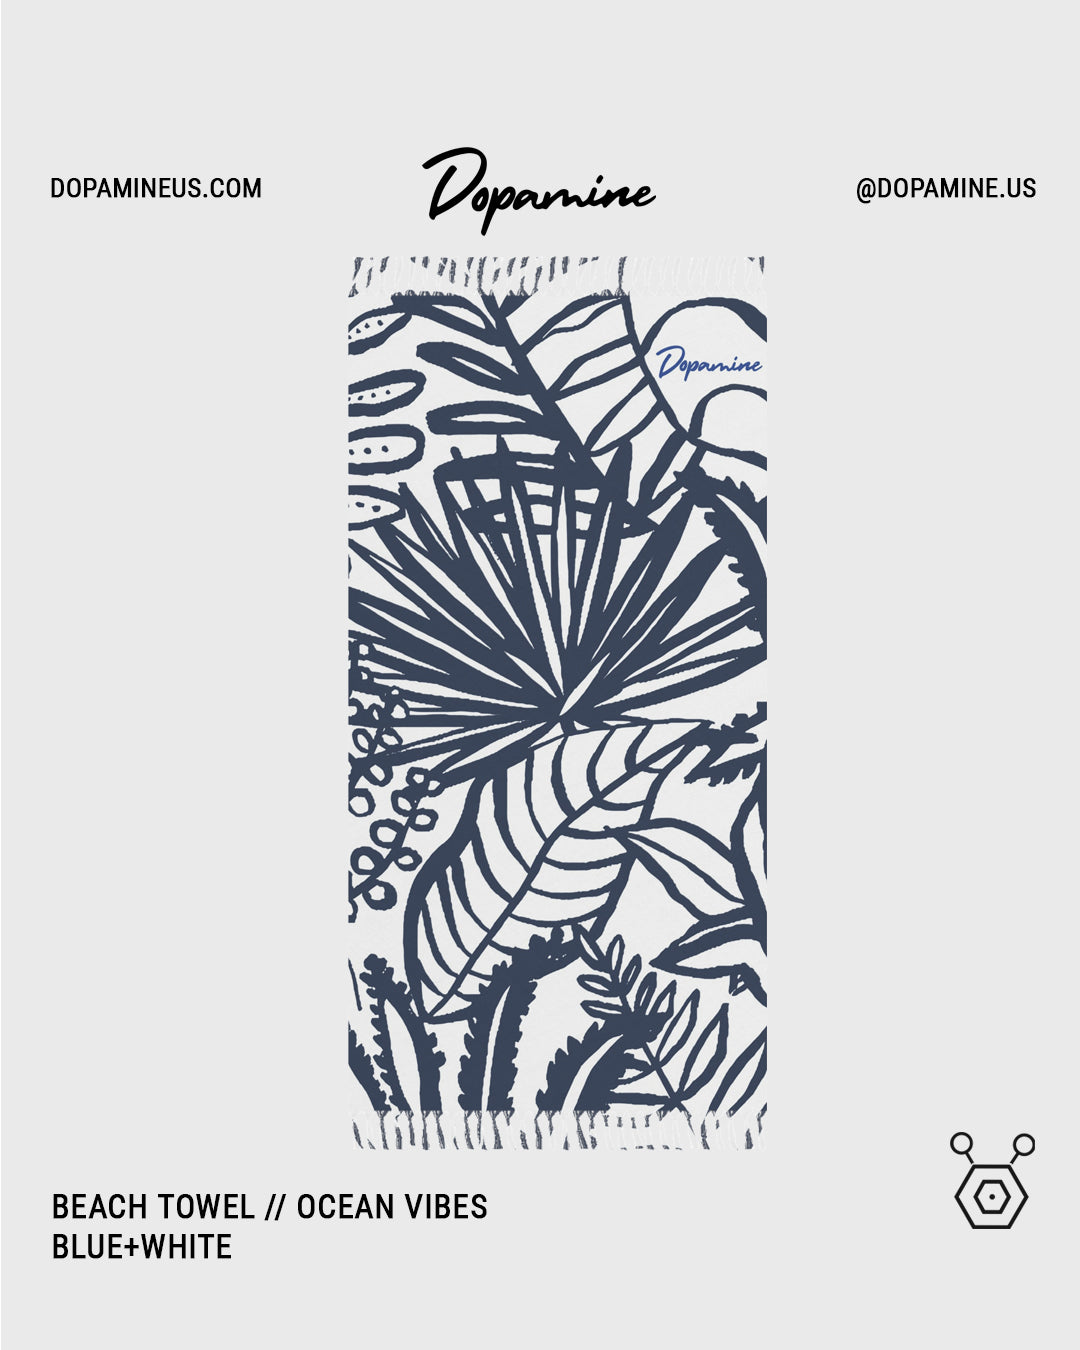 Beach Towel // Ocean Vibes